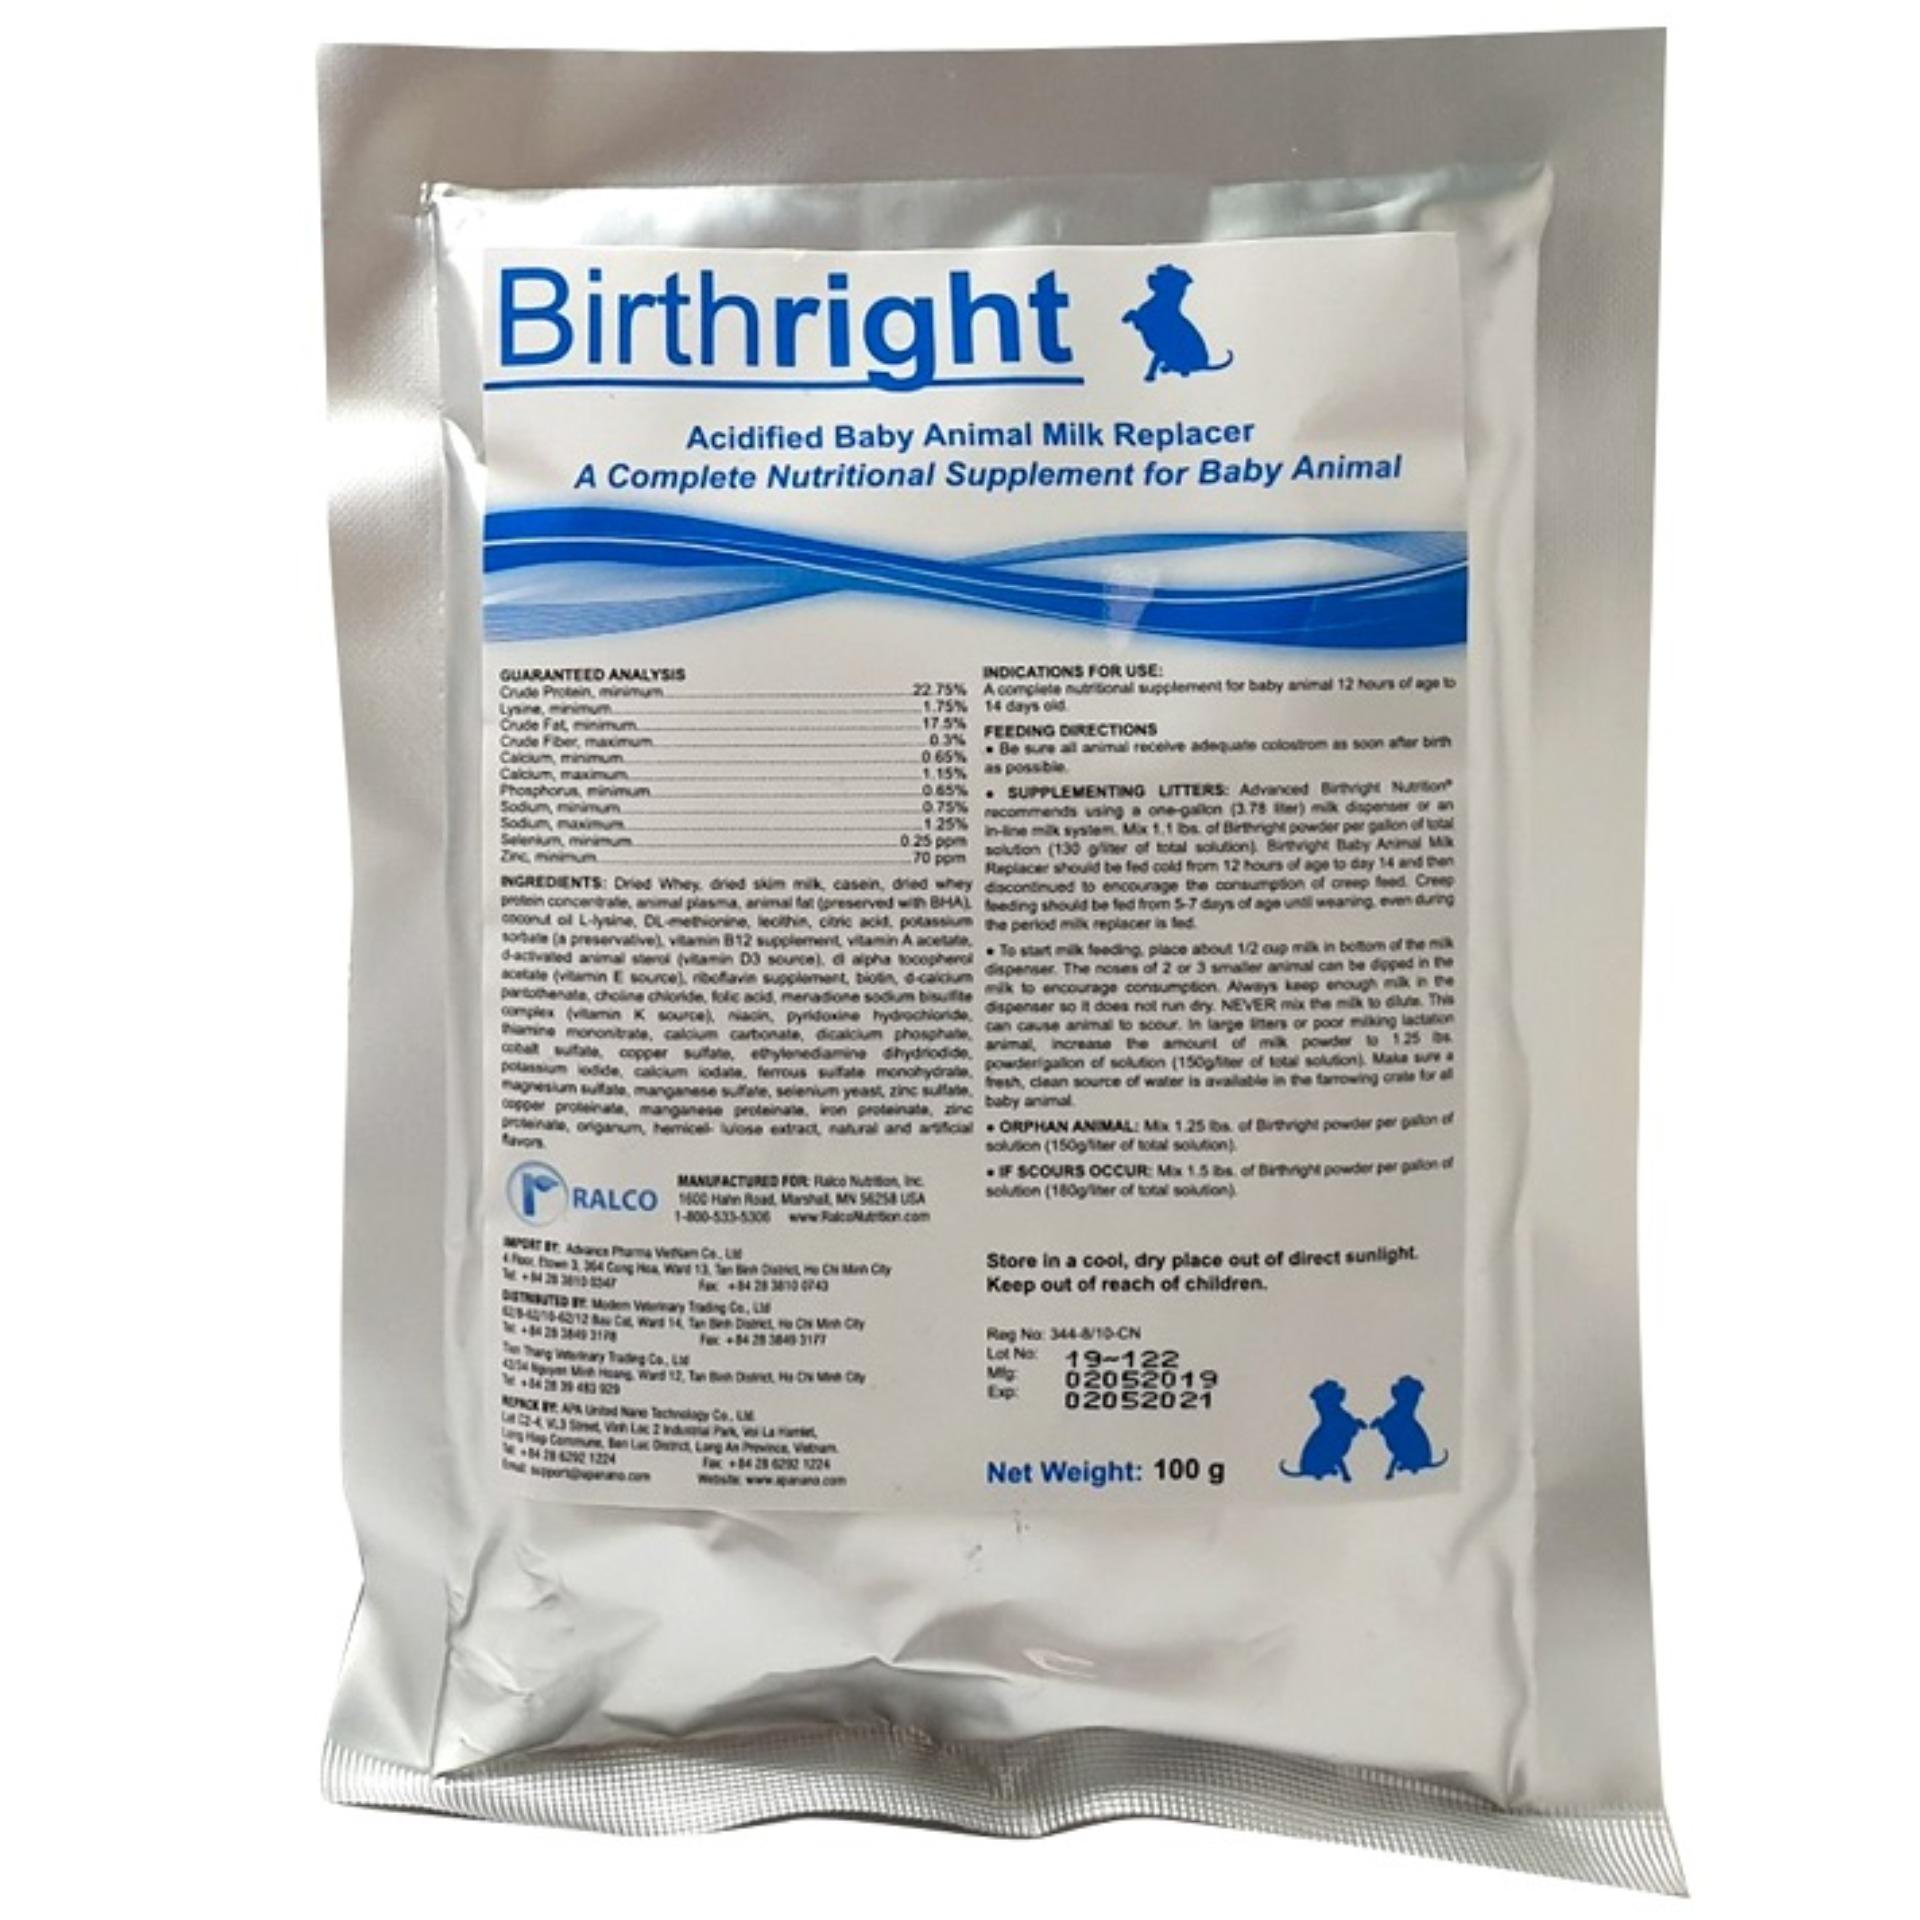 [HCM]Birthright gói 100g - Sữa bột thay thế sữa mẹ cho chó mèo con